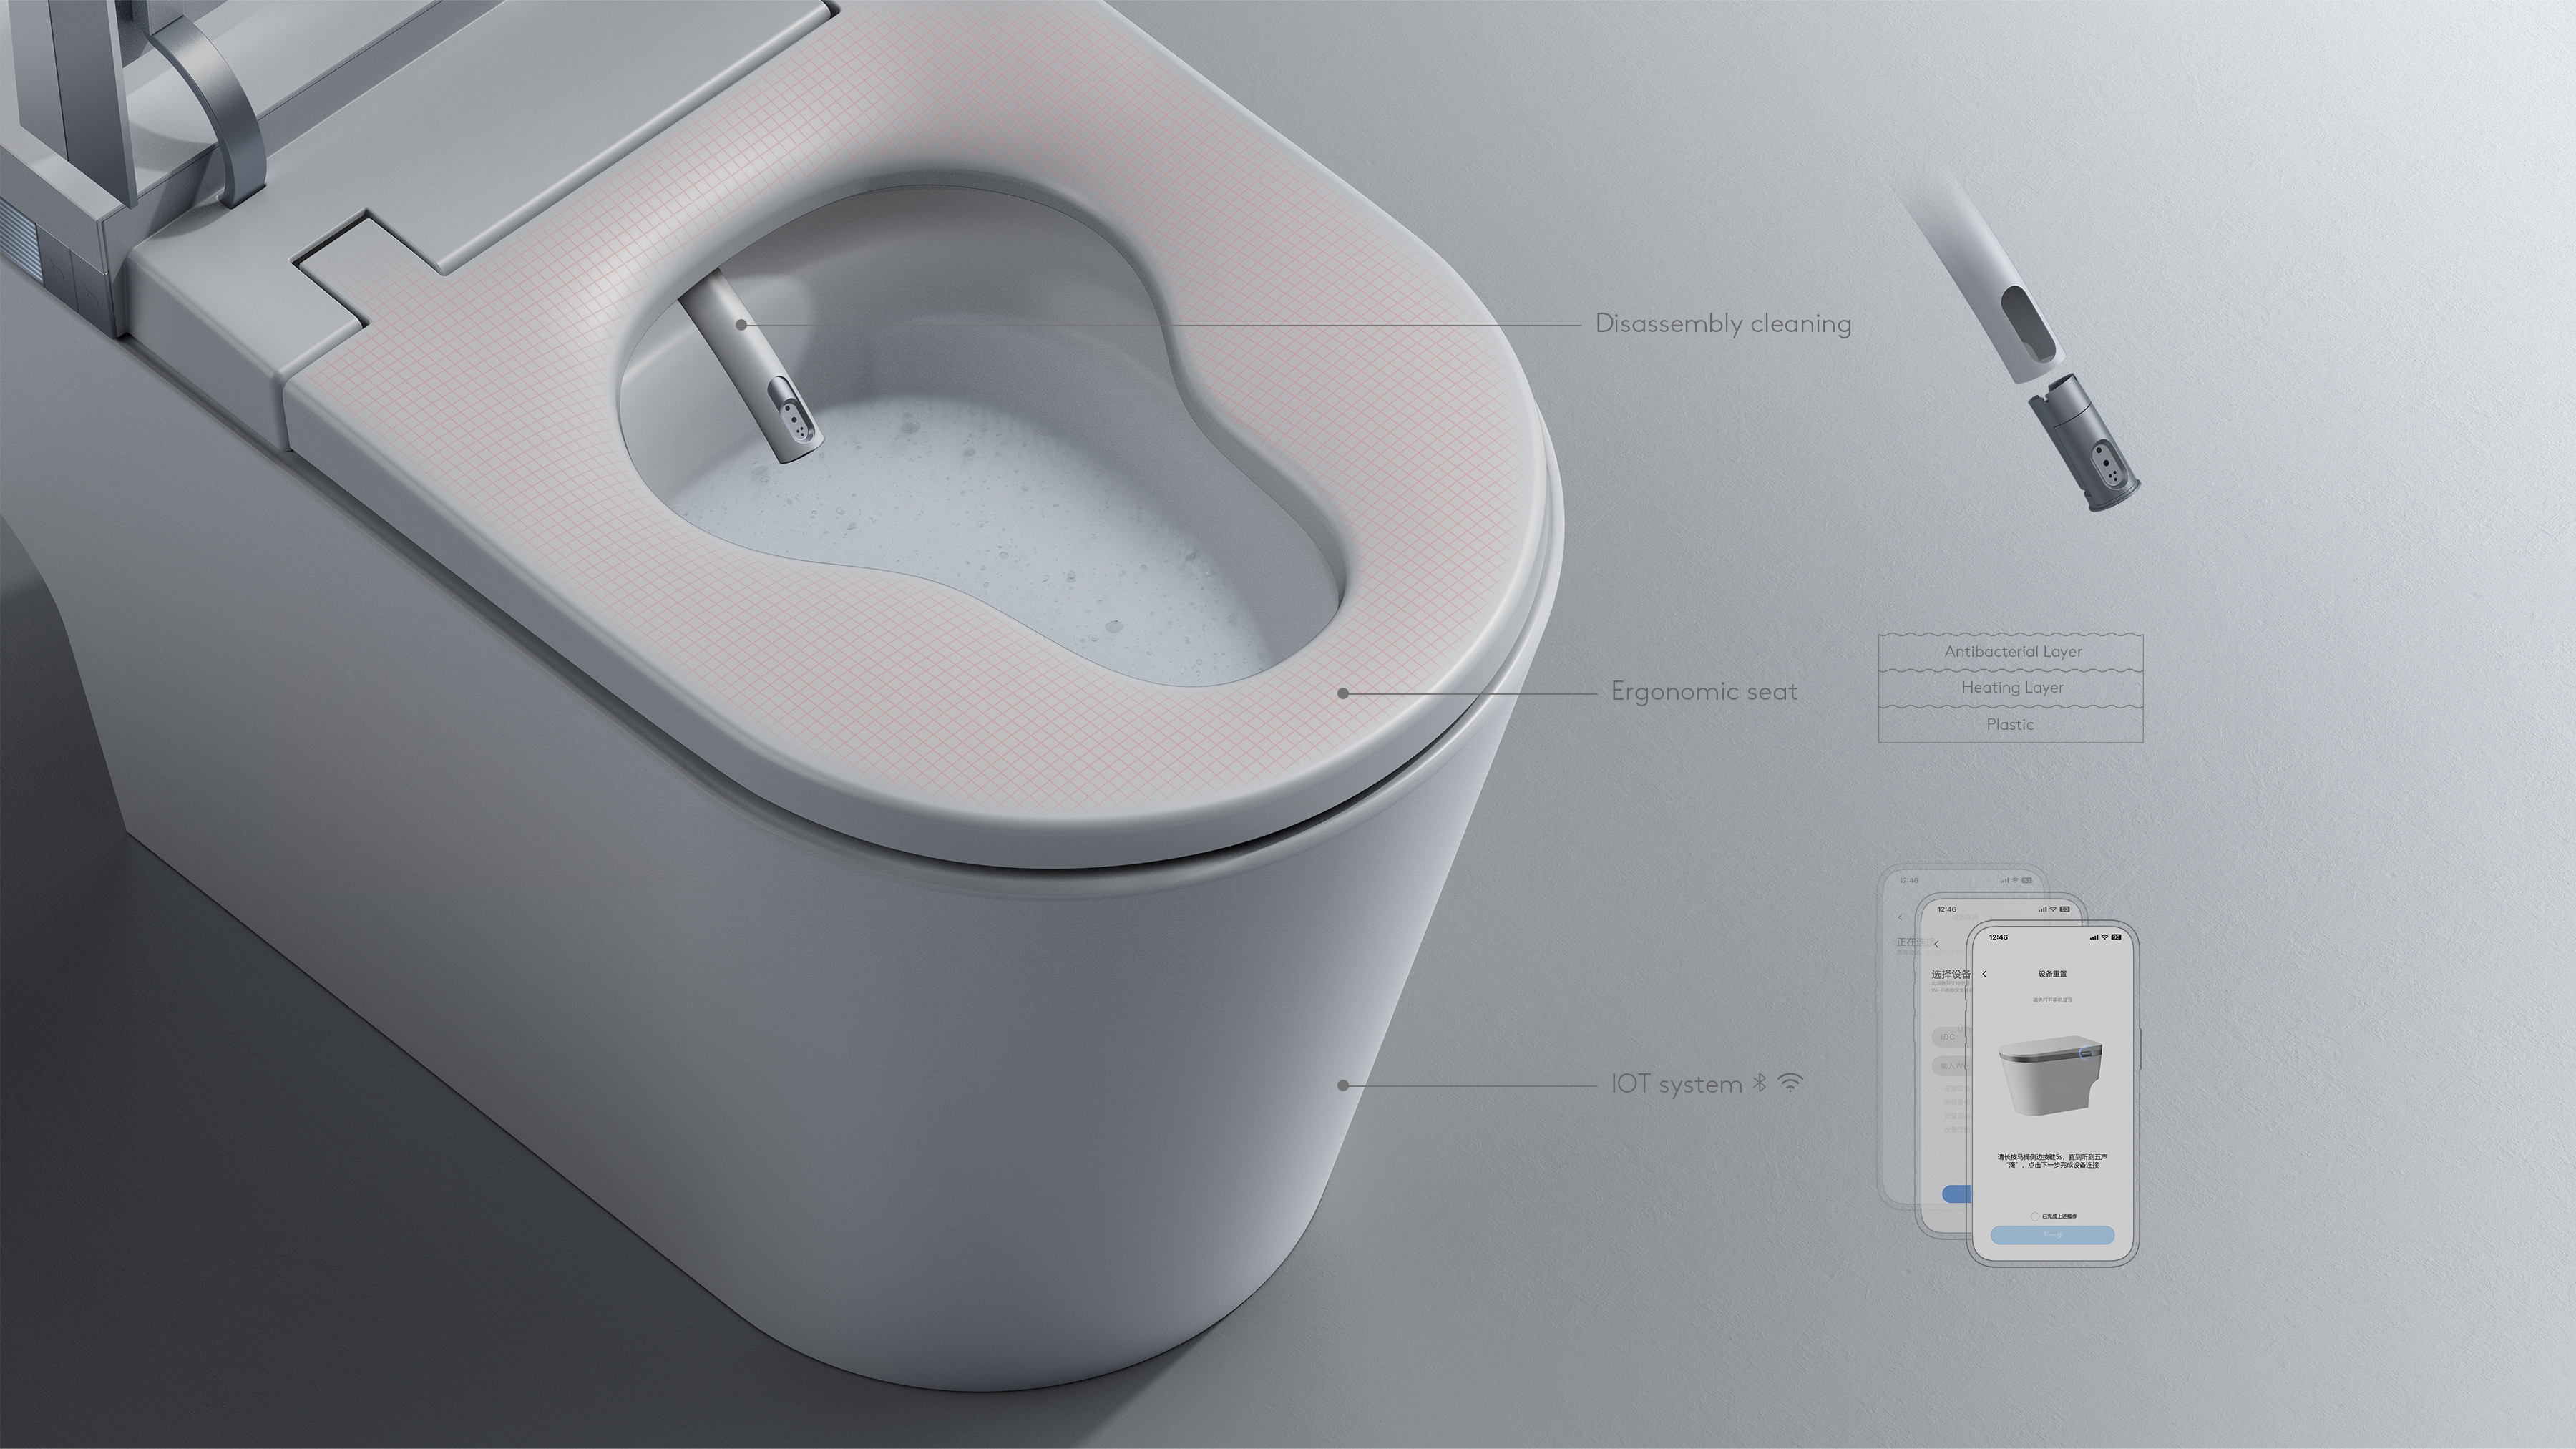 "Chasing Light" Smart Toilet